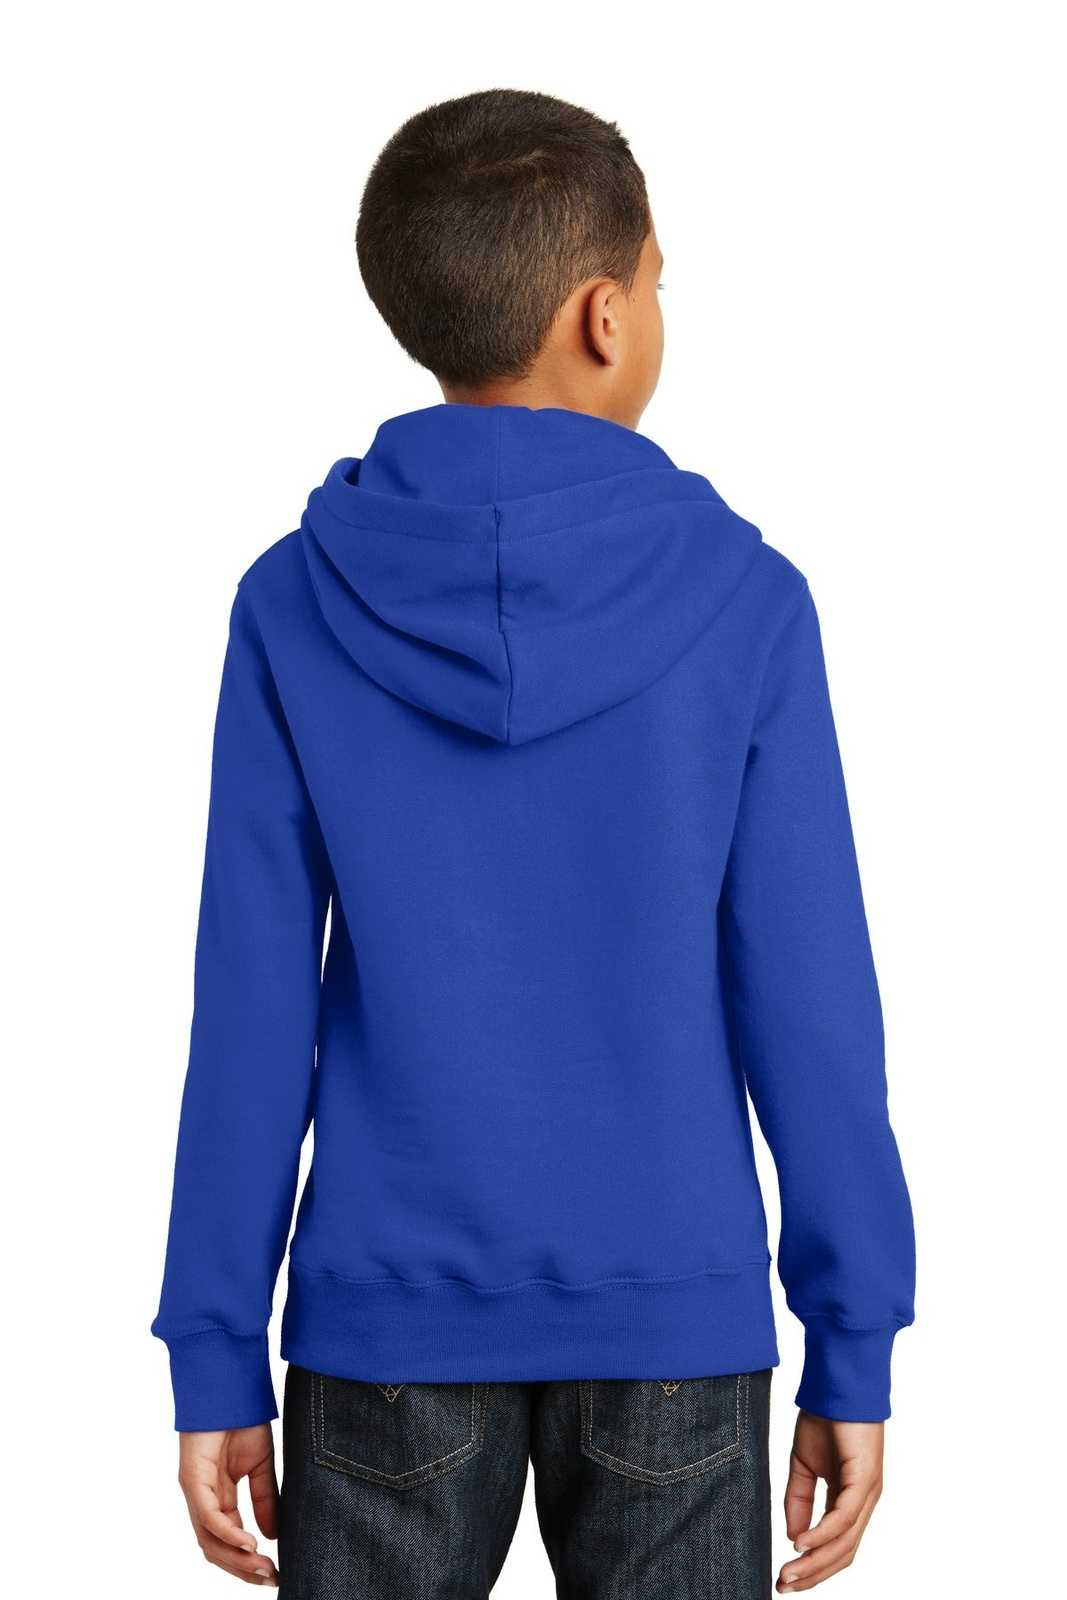 Port &amp; Company PC850YH Youth Fan Favorite Fleece Pullover Hooded Sweatshirt - True Royal - HIT a Double - 2